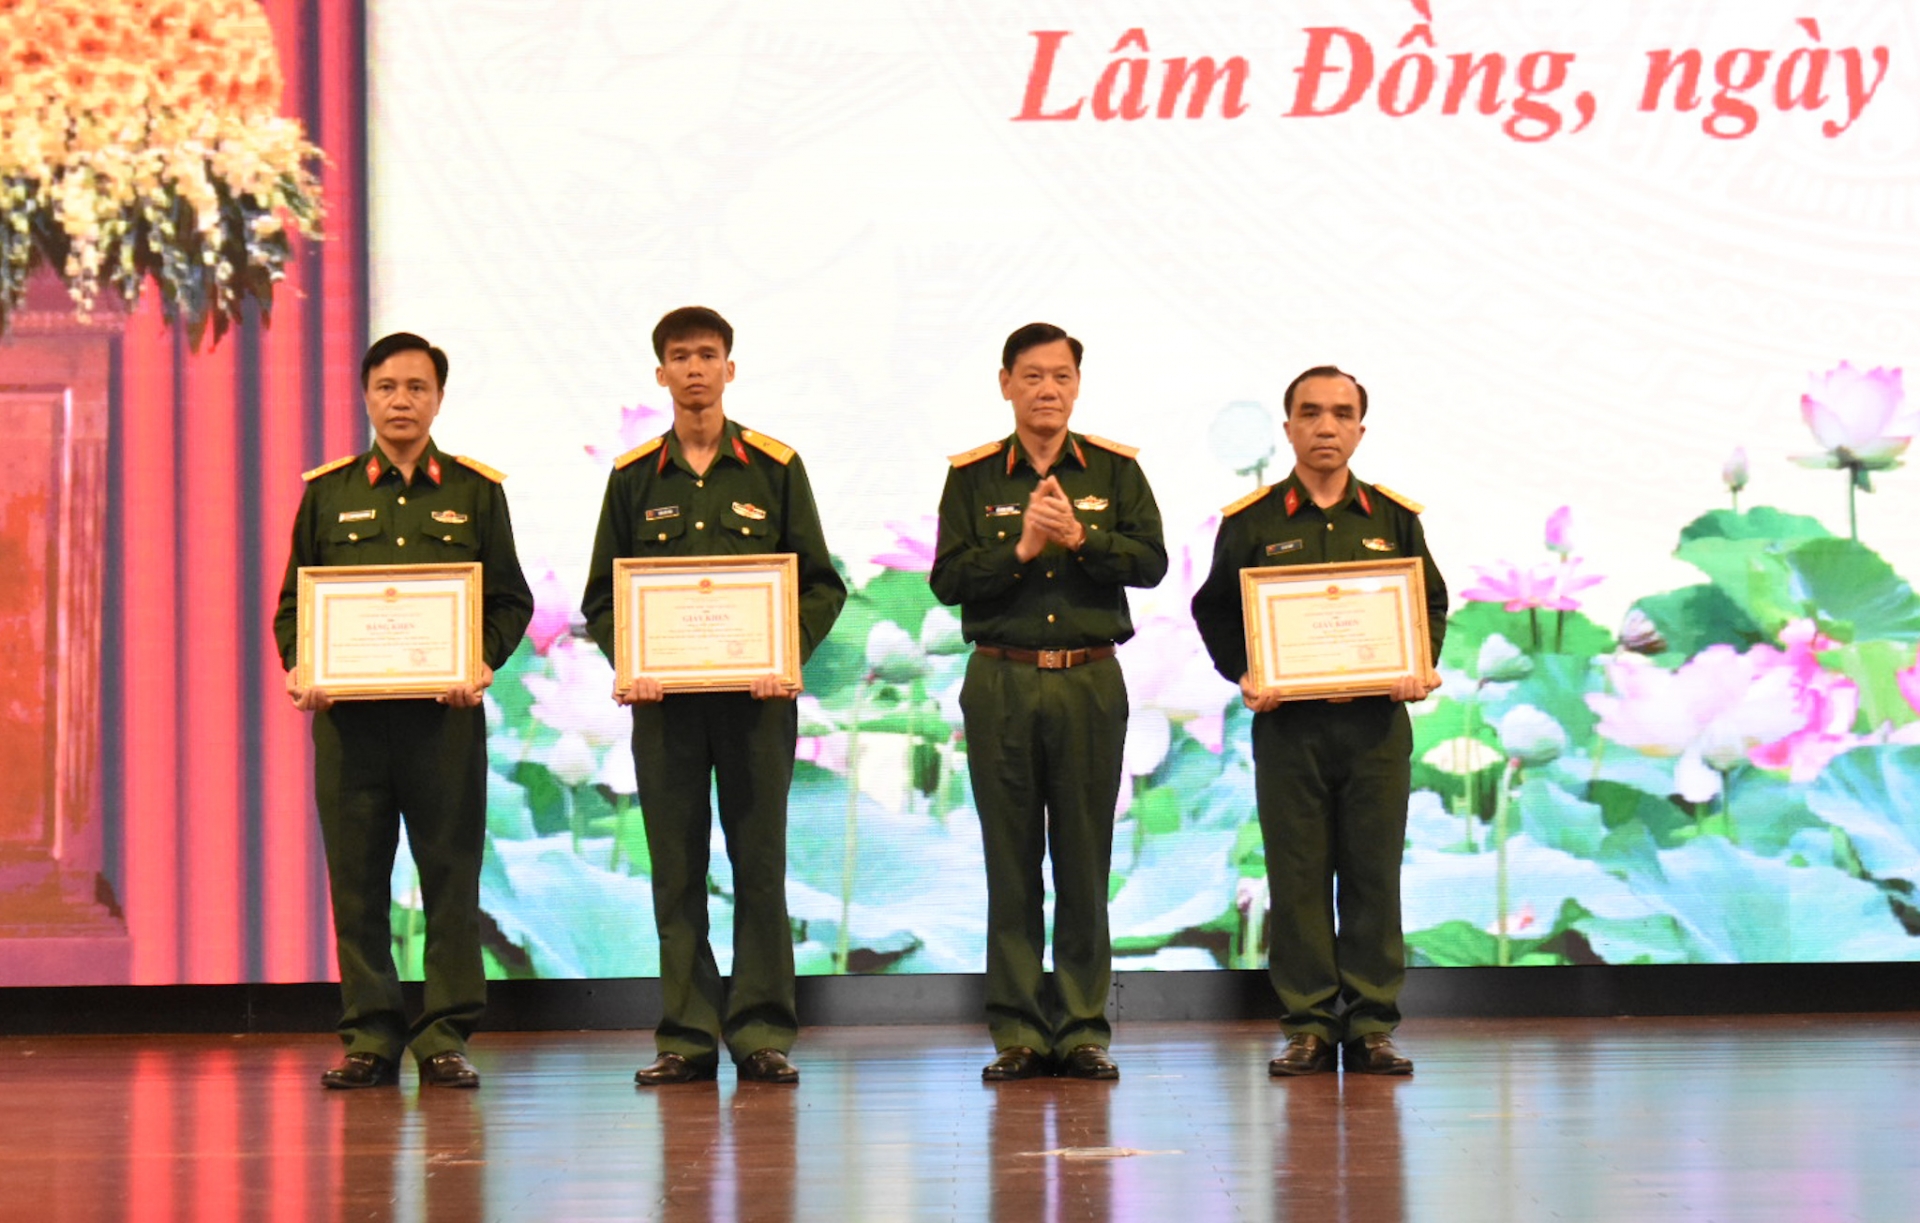 Thiếu tướng Đỗ Minh Xương, Giám đốc Học viện Lục quân trao Bằng khen, Giấy khen cho các giảng viên đạt giải Nhất, Nhì, Ba trong Hội thi